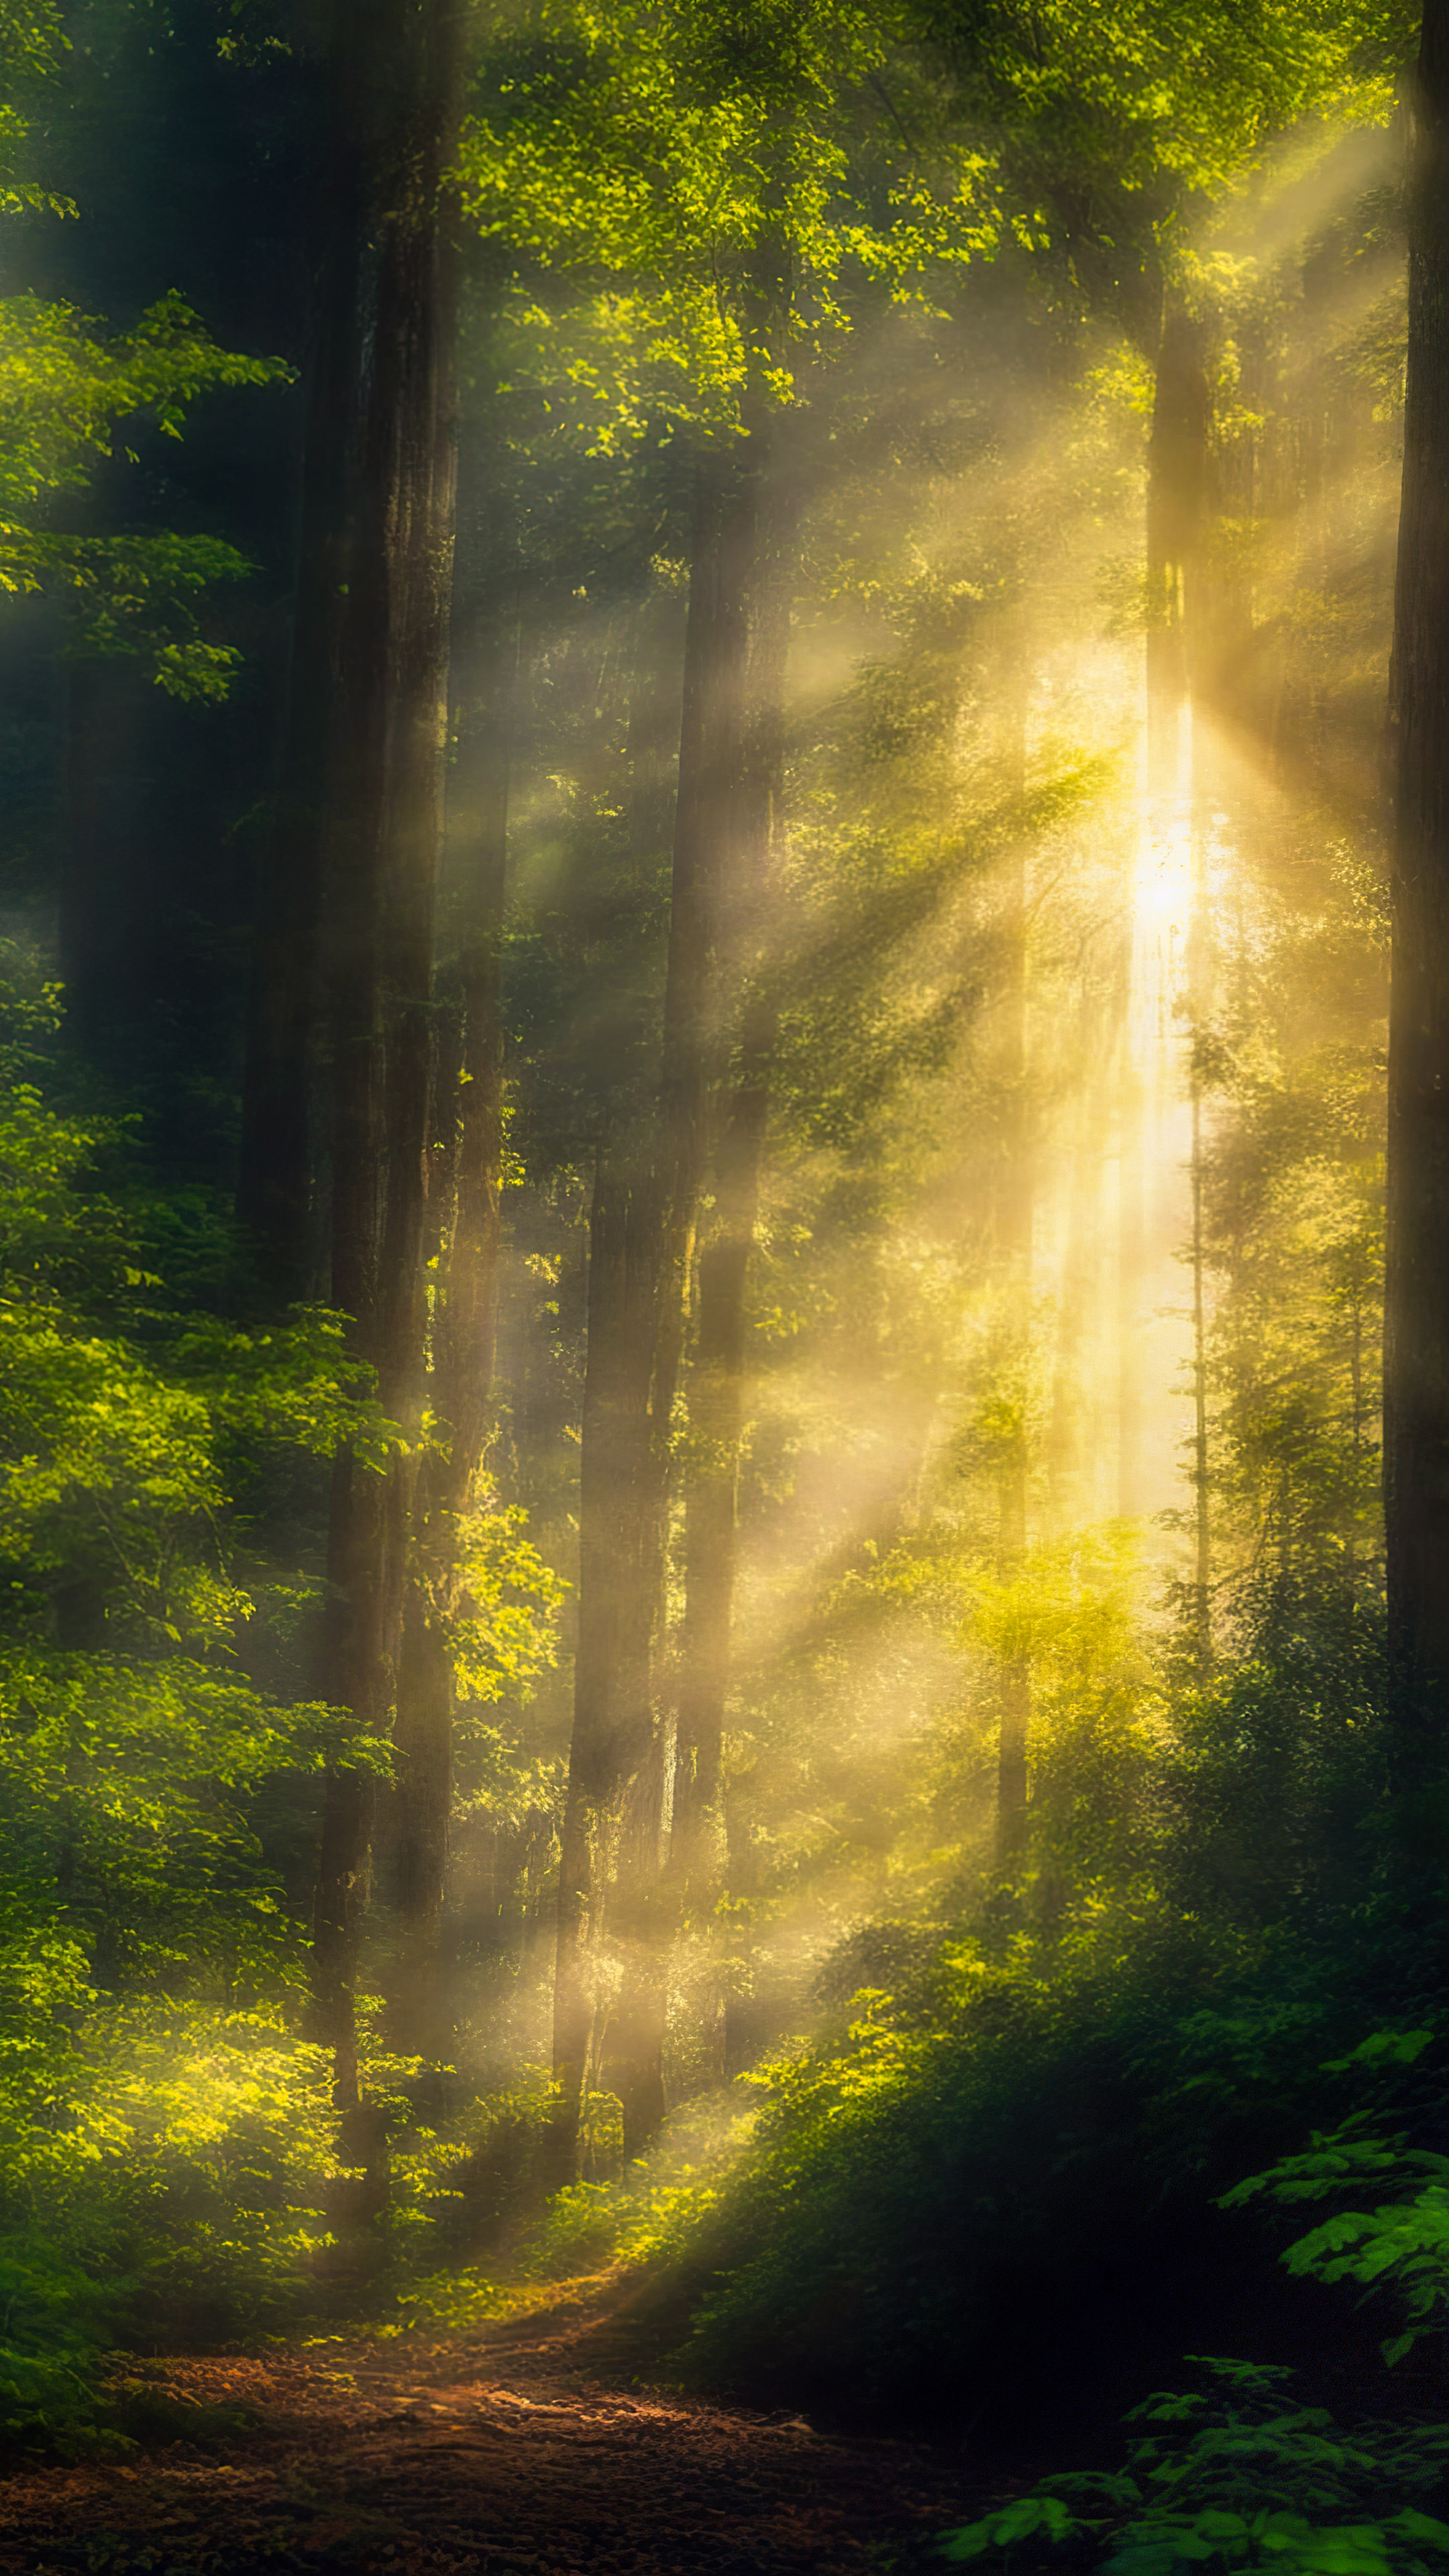 Téléchargez ces belles images de fond d'écran nature, présentant une scène sereine de forêt avec la lumière du soleil filtrant à travers la canopée dense, projetant des ombres mouchetées sur le sol de la forêt. 